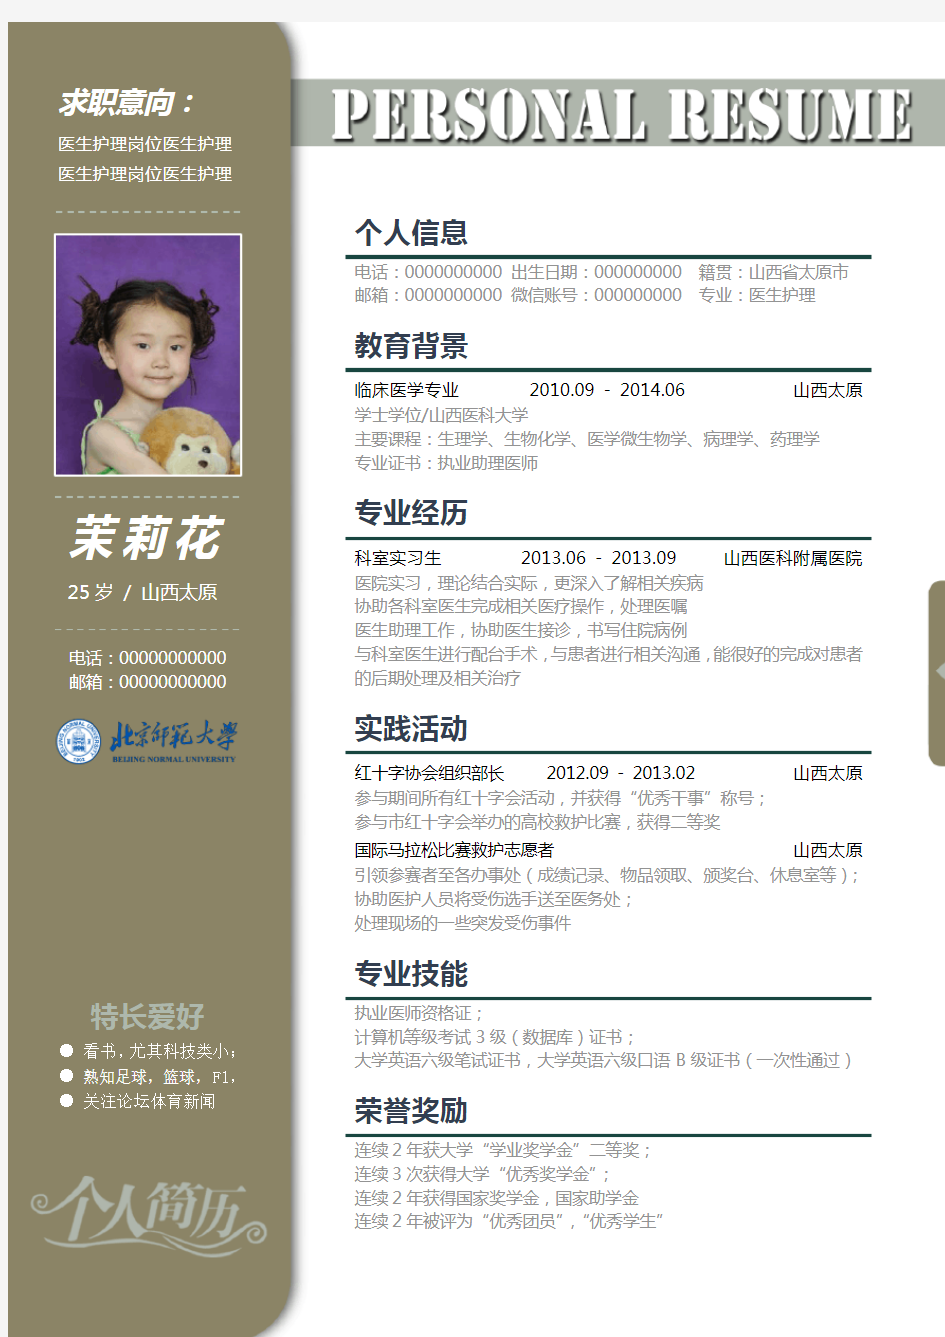 北京师范大学优秀个人求职简历模板—388